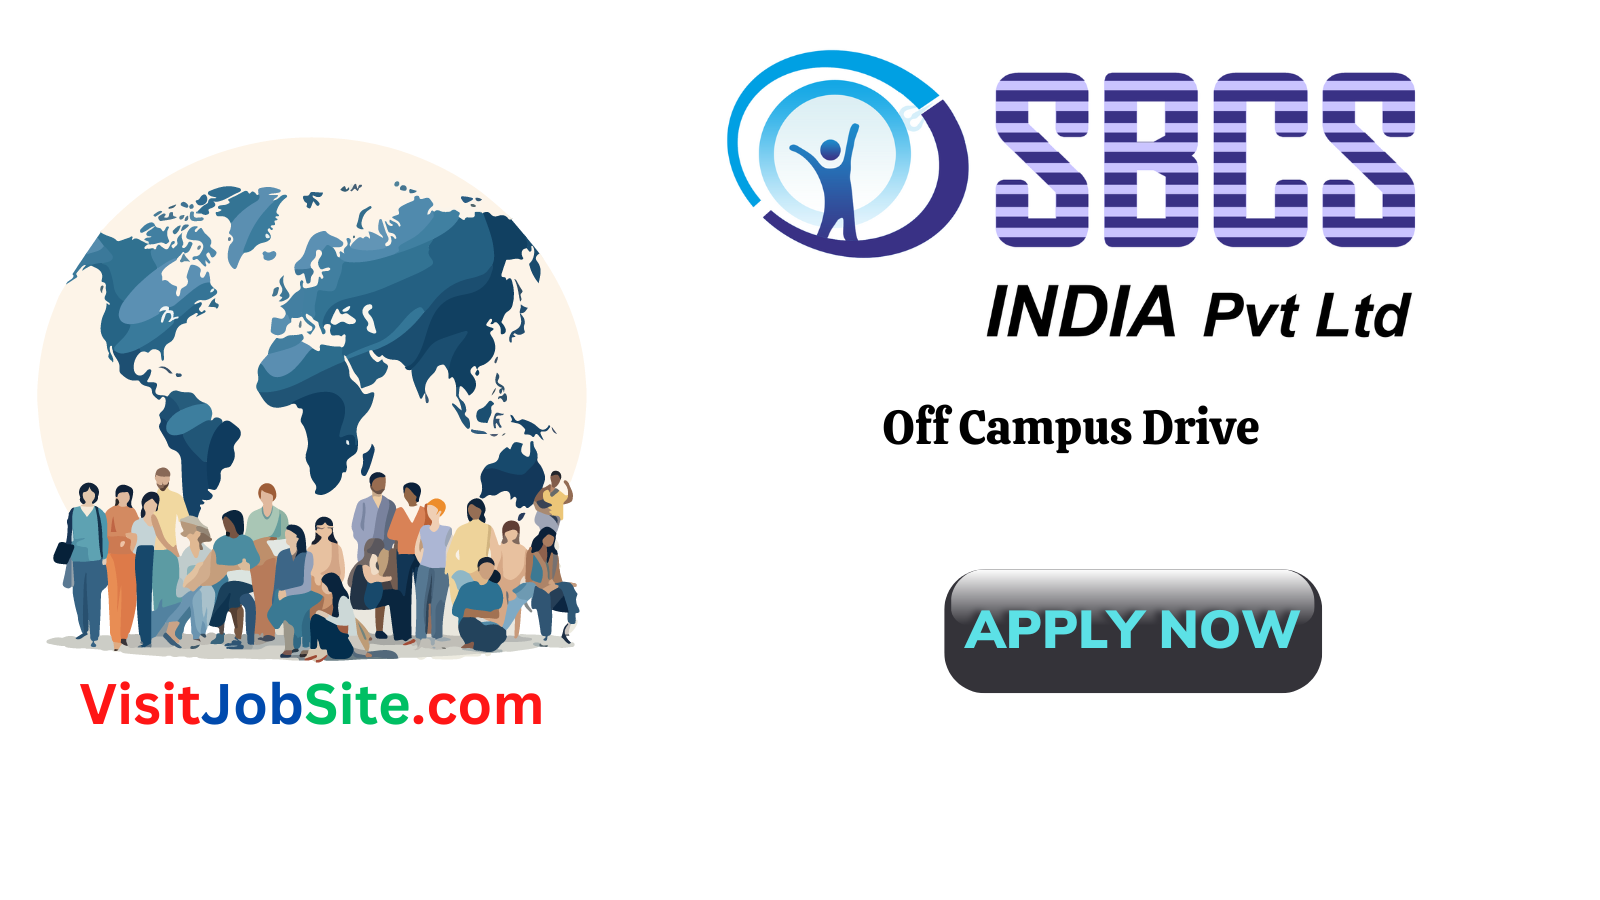 SBCS India Pvt Ltd Off Campus Drive